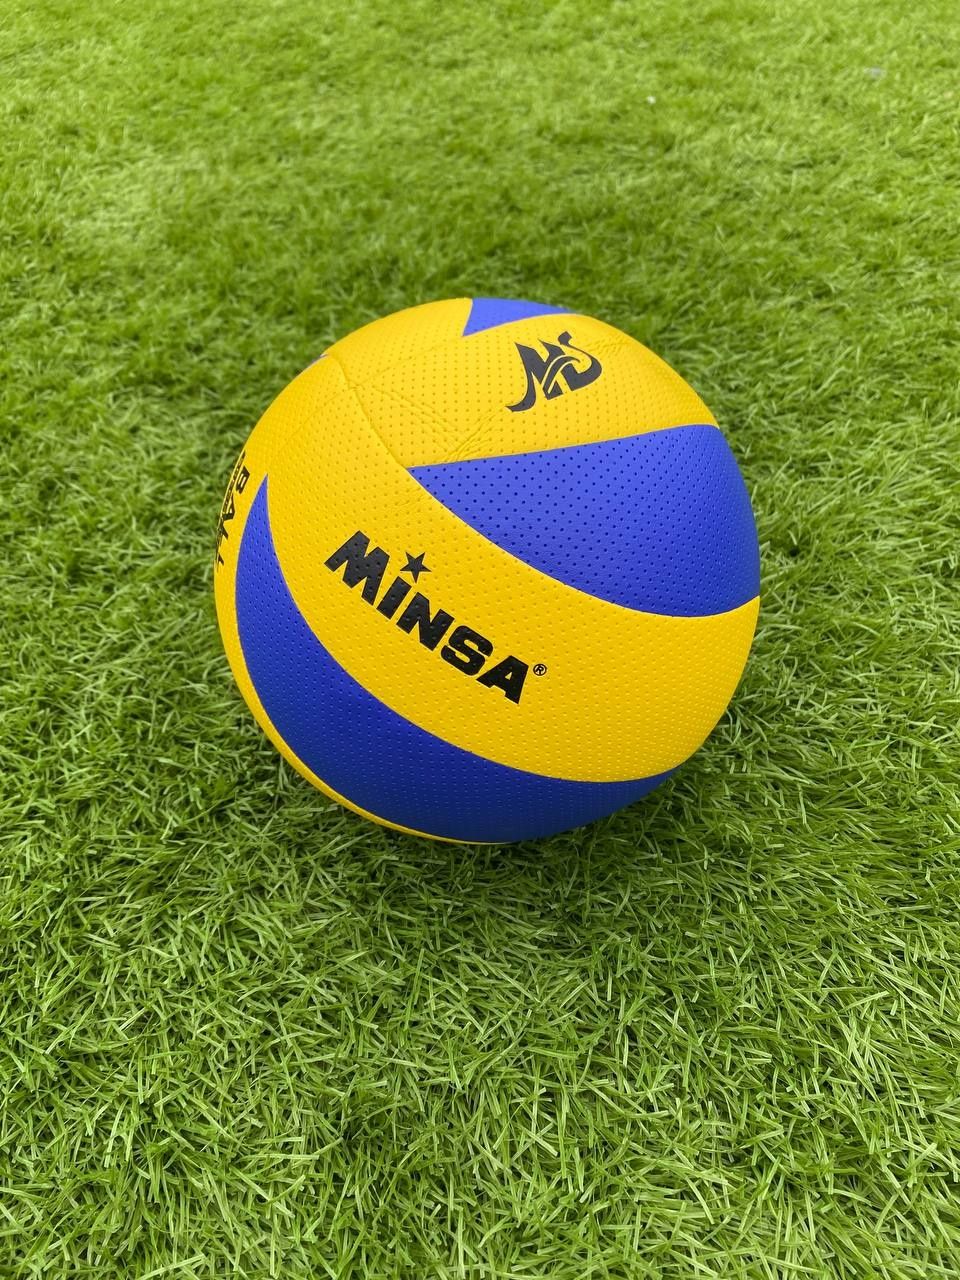 Волейбольный мяч Minsa